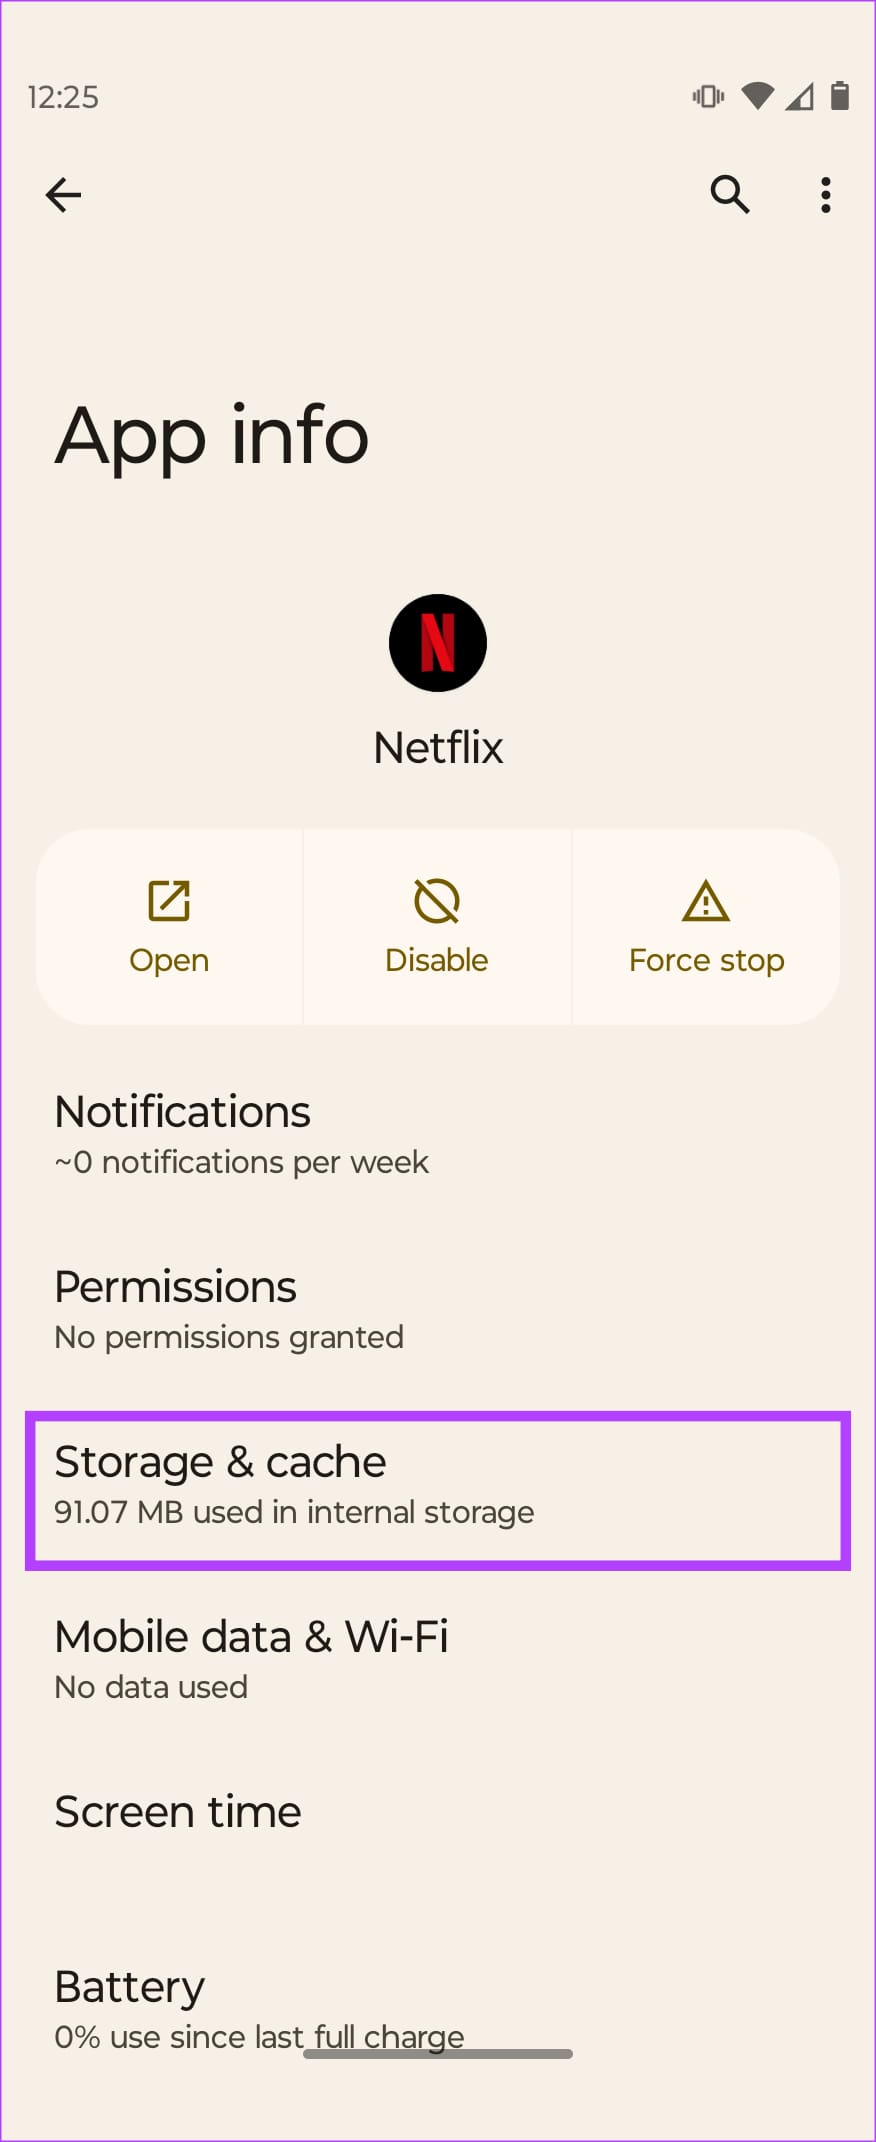 Tap Storage & cache